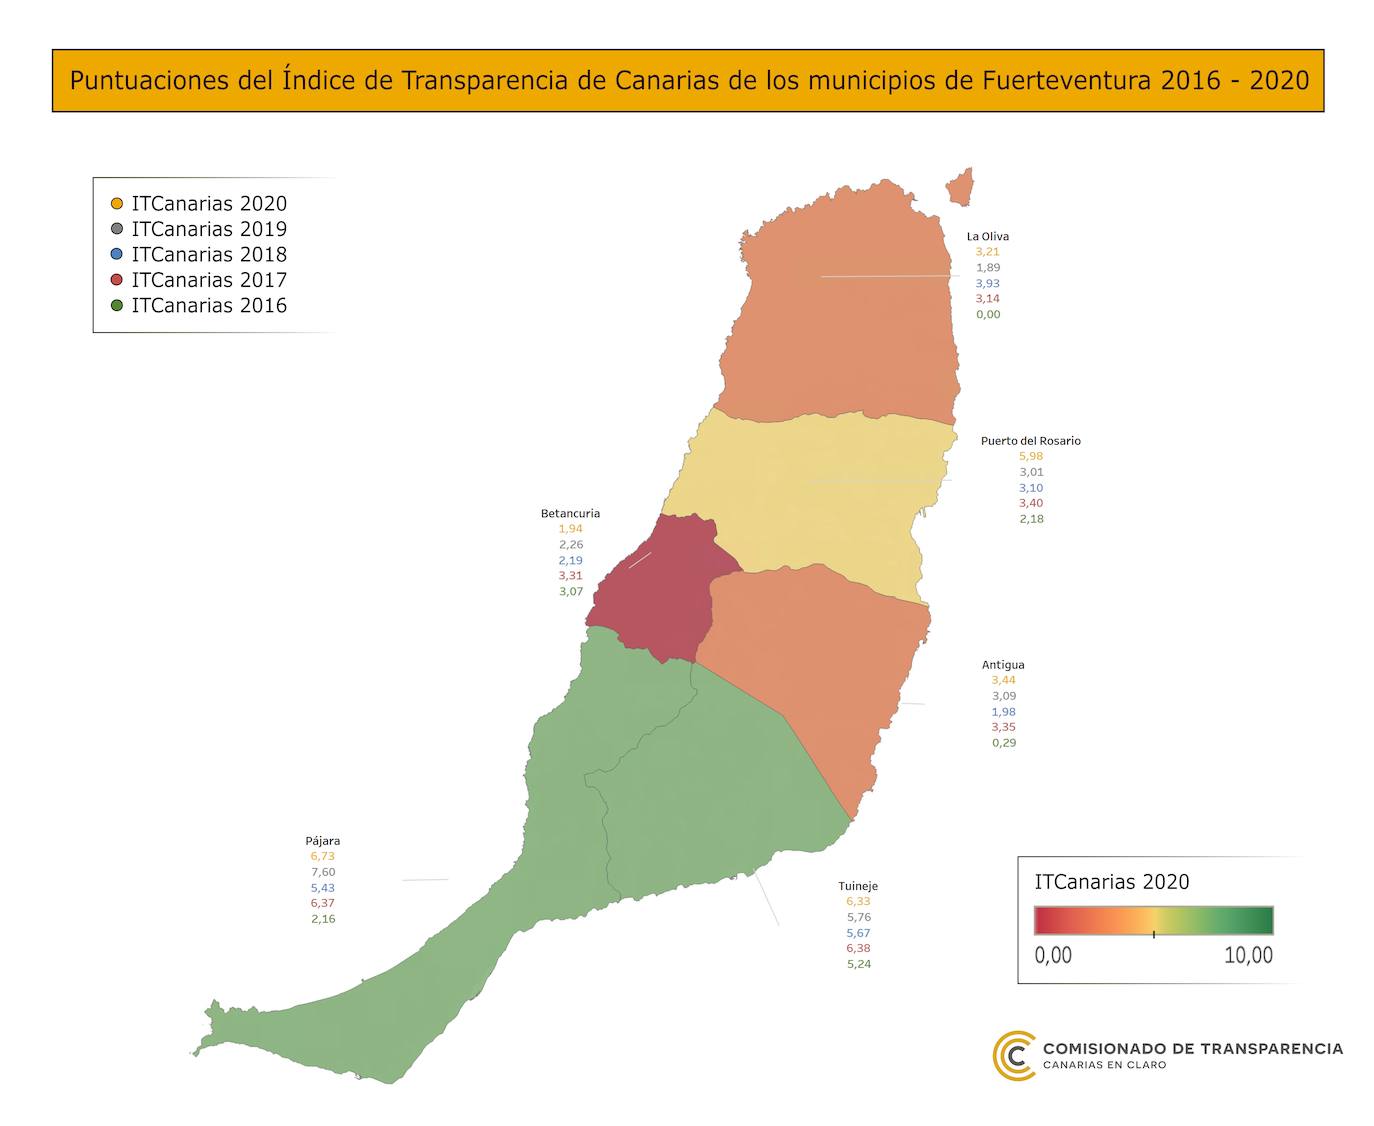 Puntuación de transparencia de los municipios de Fuerteventura 2016-2020. 